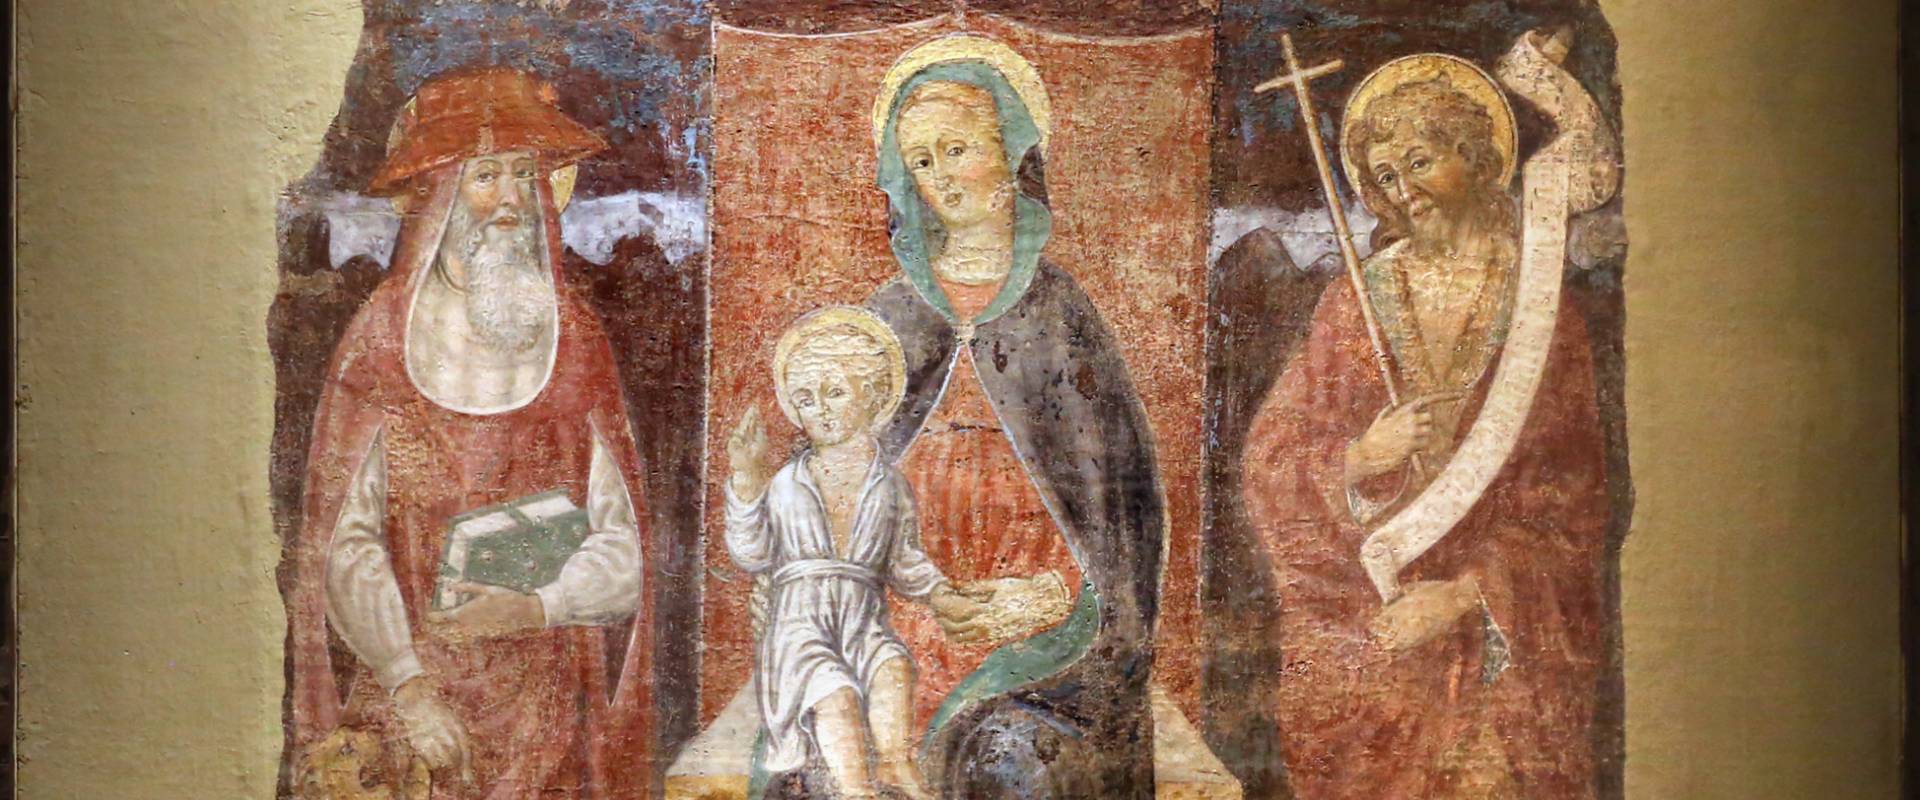 Jacopo loschi, madonna col bambino in trono tra i ss. girolamo e giovanni in battista, 1480-90 ca., fda s. girolamo a parma photo by Sailko